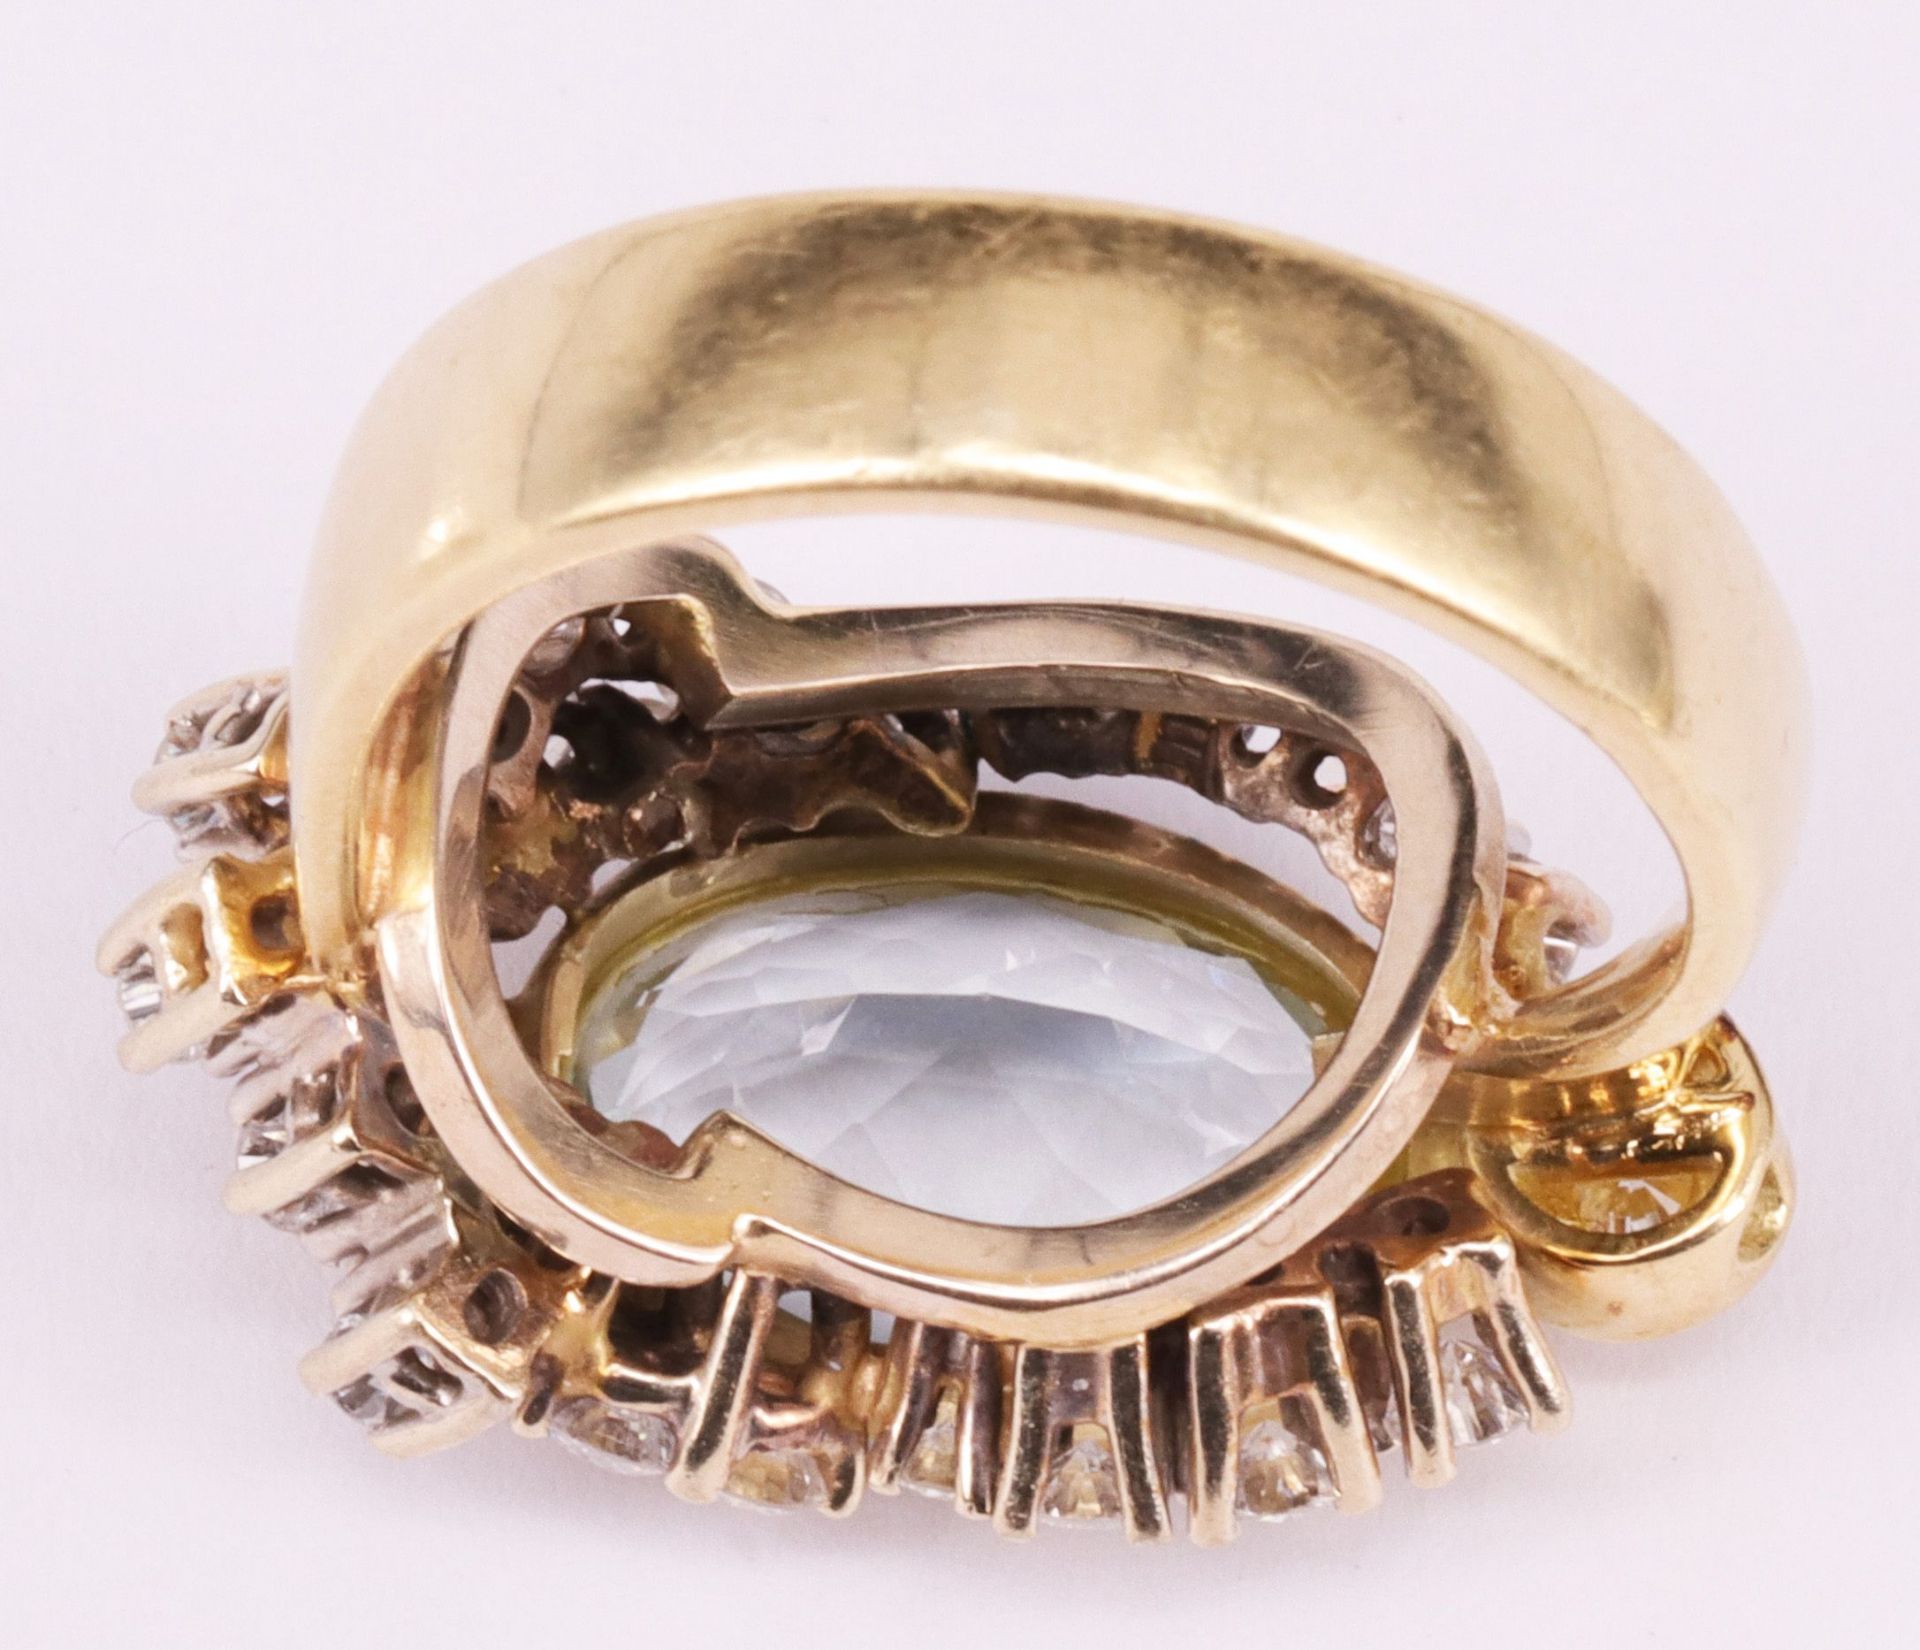 Aparter Ring, 585er GG, 9,79 g, mit Aquamarin und 29 Diamanten in asymetrischer Anordnung, RG57 - Image 2 of 4